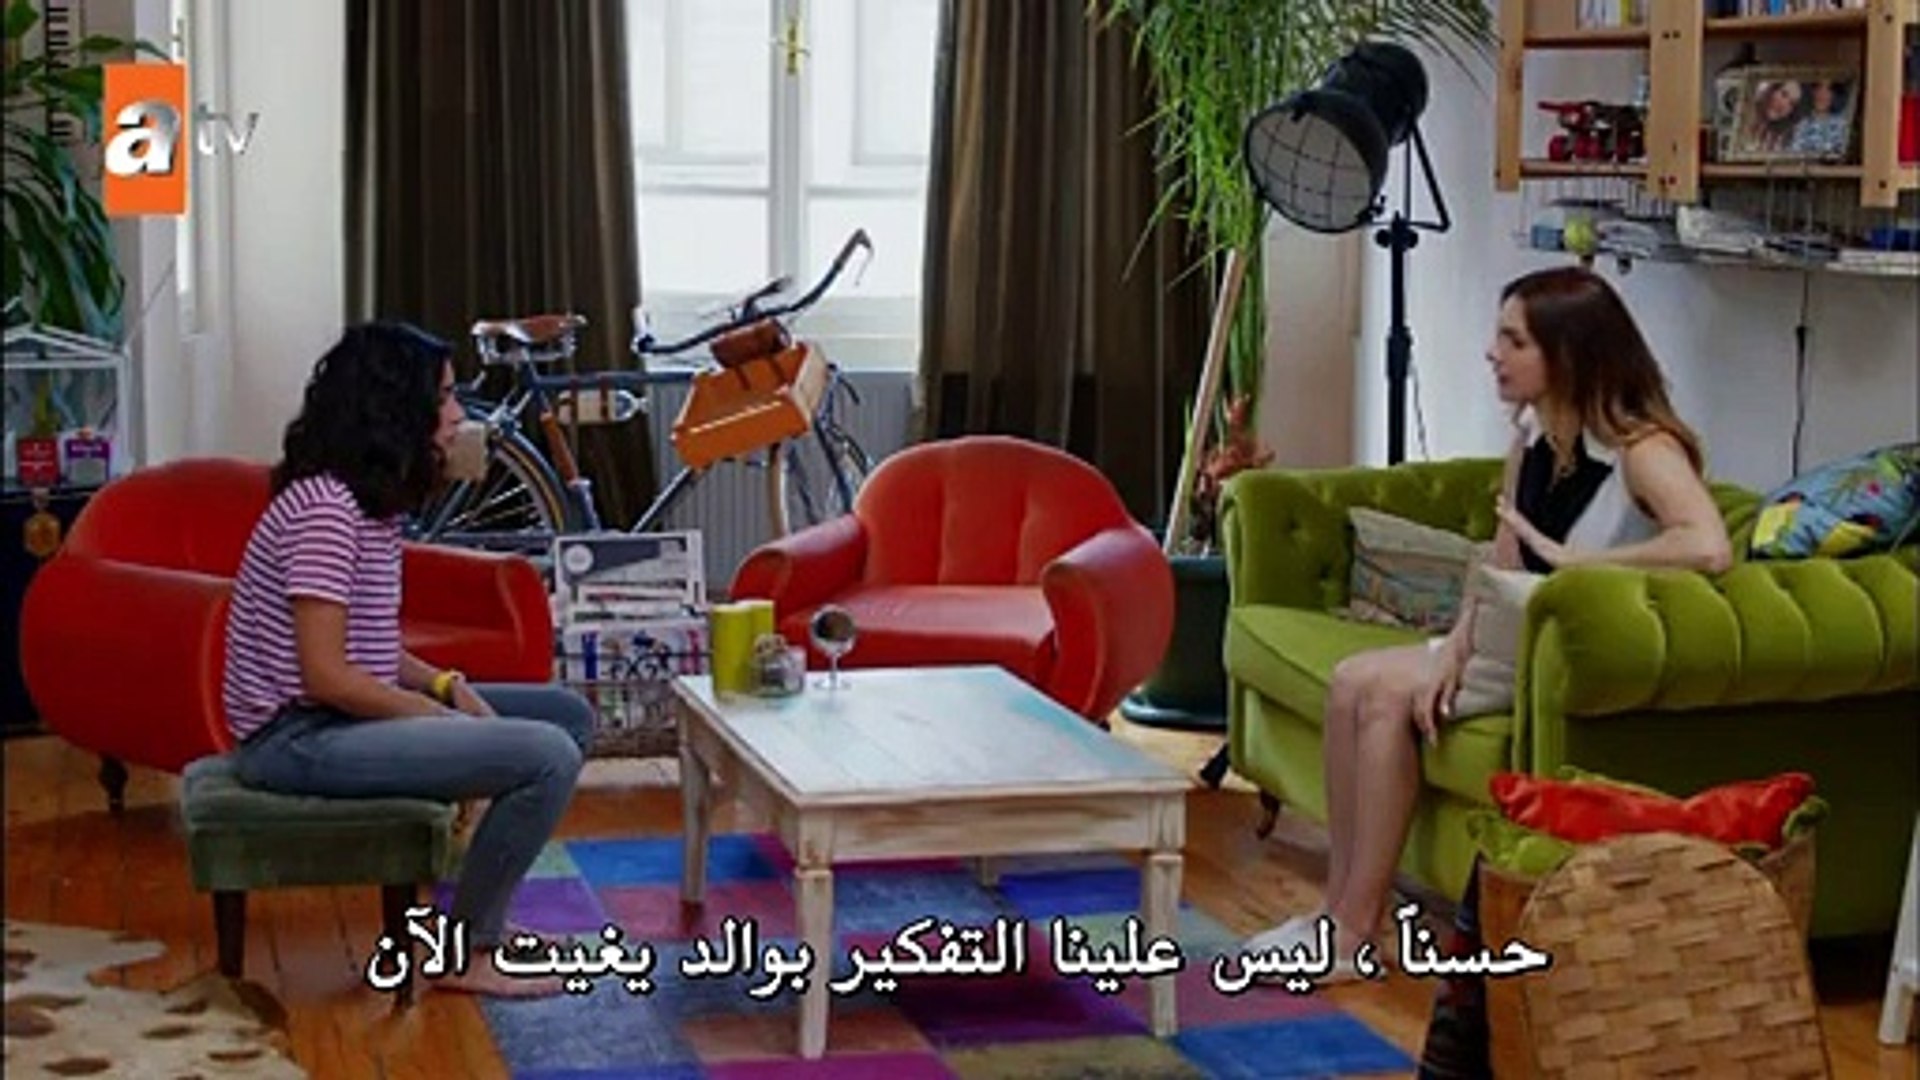 مسلسل هل يحبني الحلقة 11 القسم 1 مترجم للعربية فيديو Dailymotion